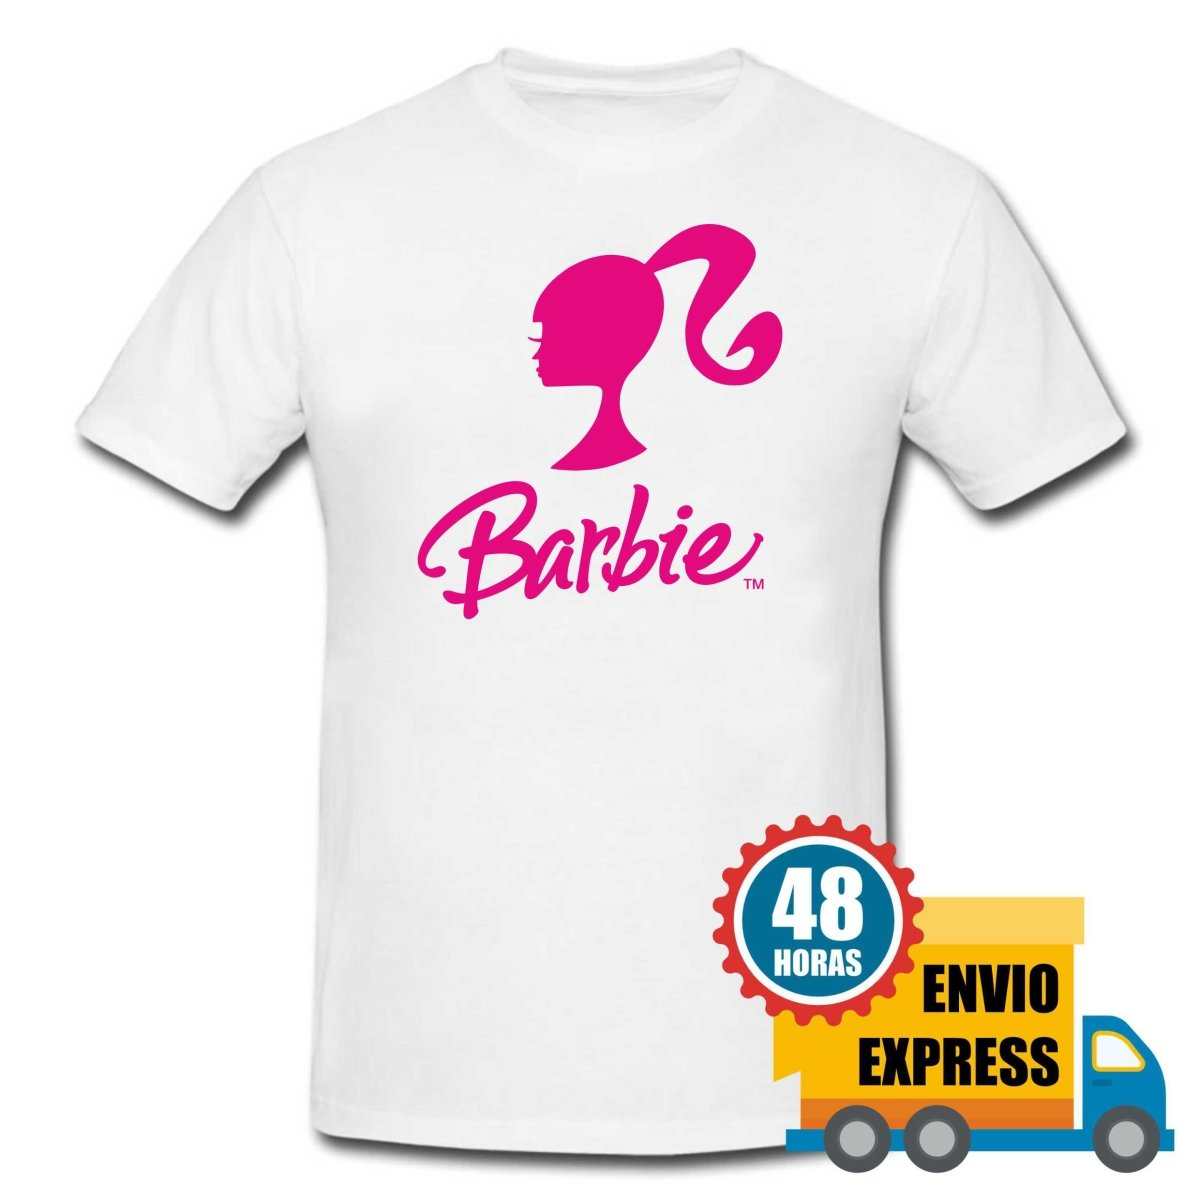 Tshirts - Barbie RMCLICK